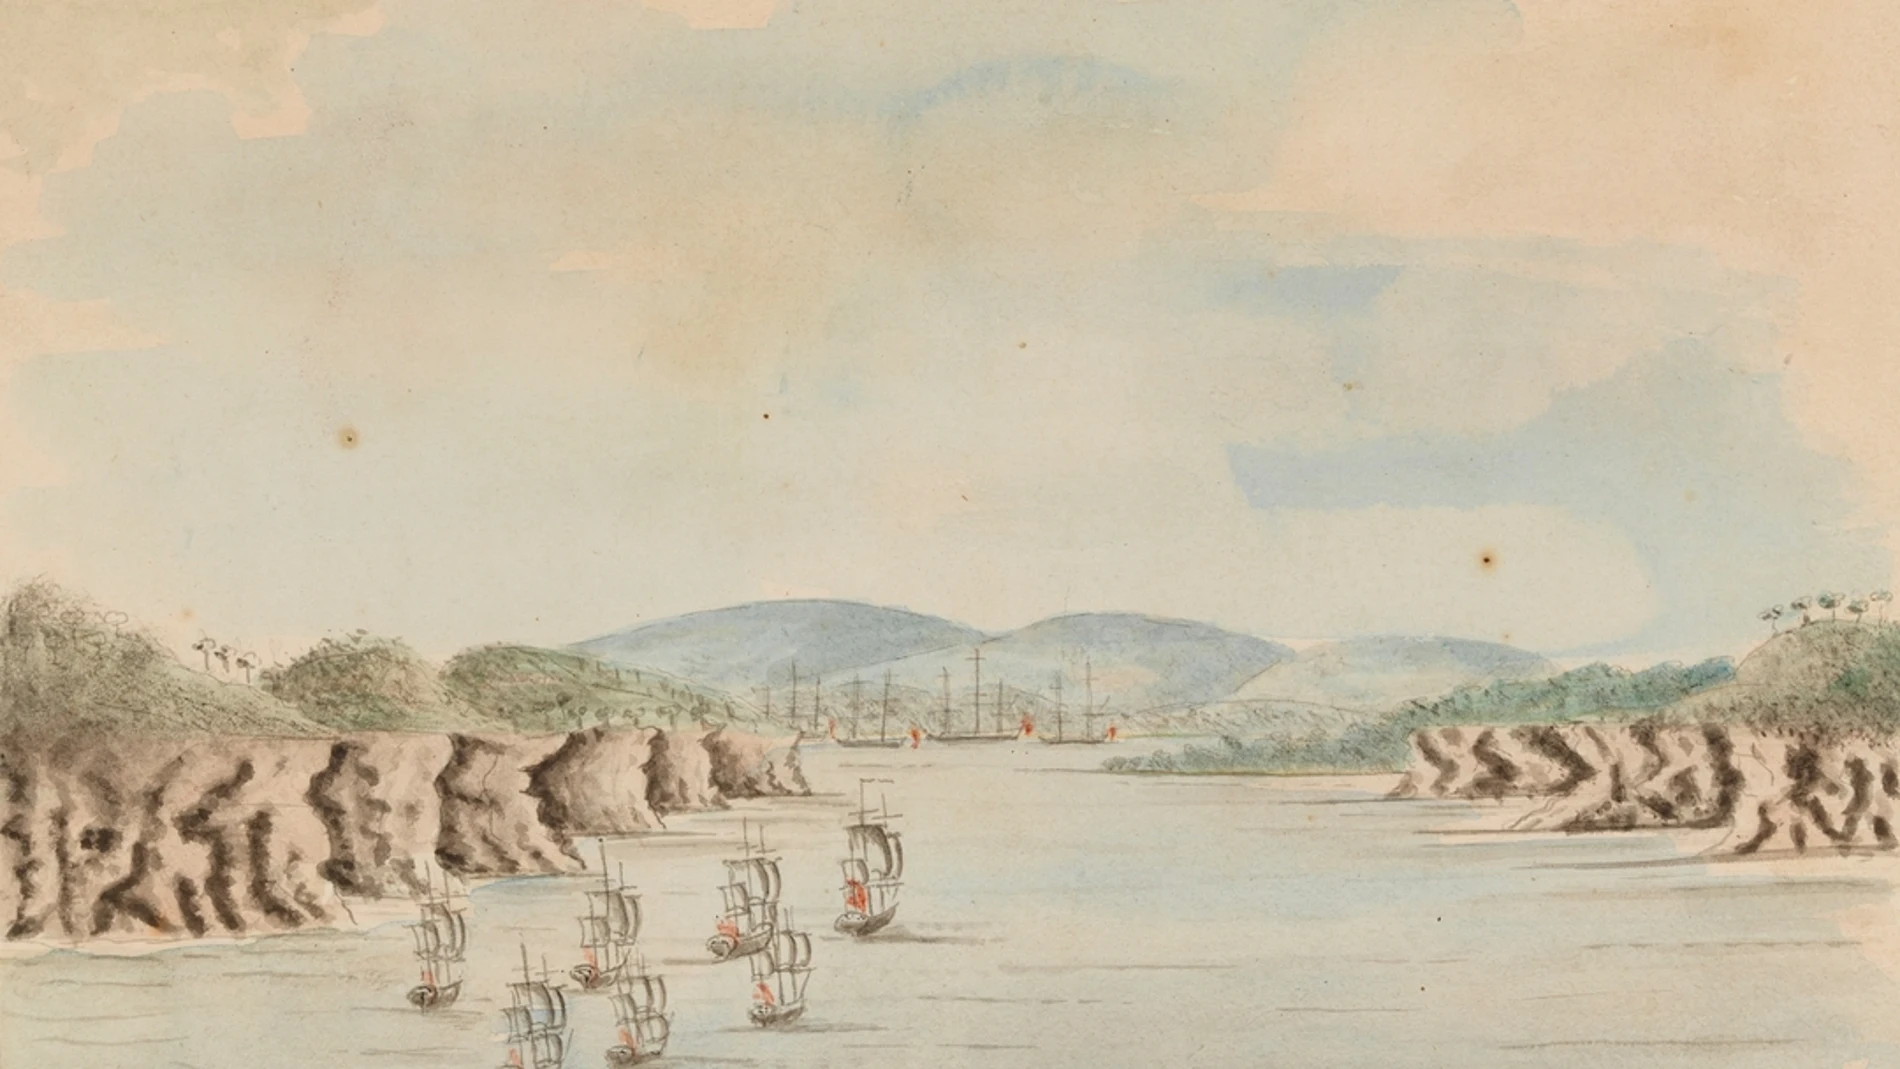 La Primera Flota llega a Botany Bay el 21 de enero de 1788